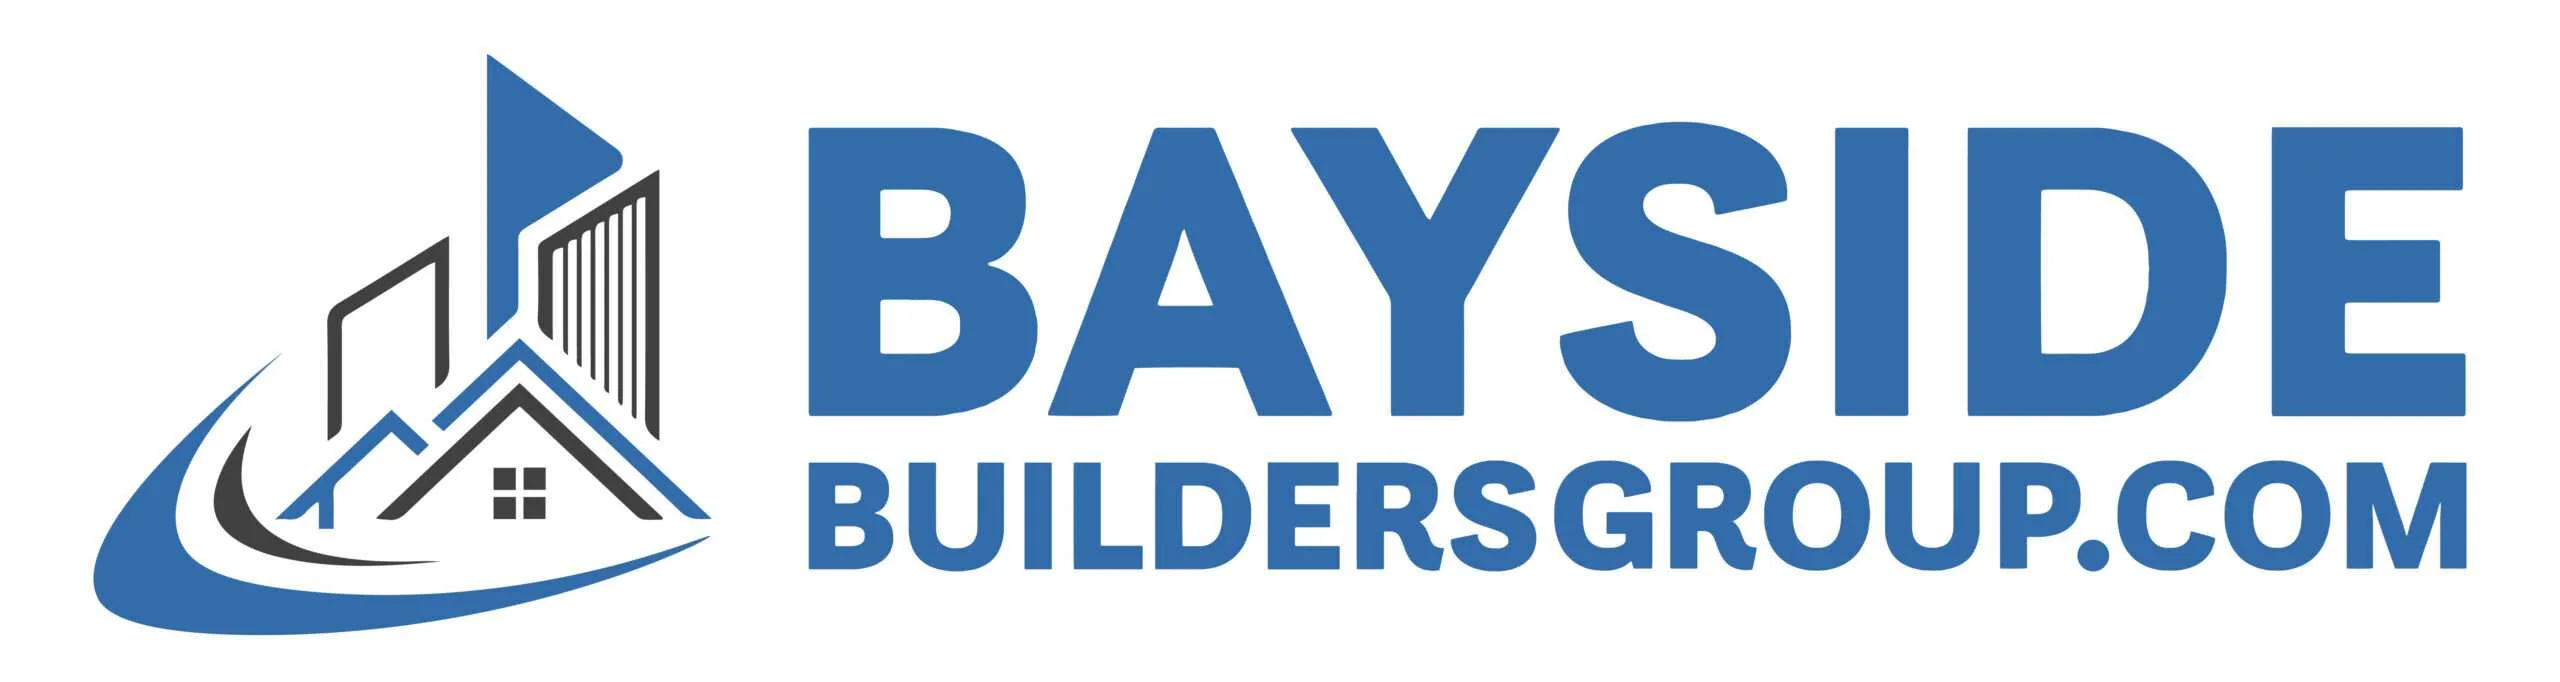 Bayside-Builders-Group-Inc-logo.webp